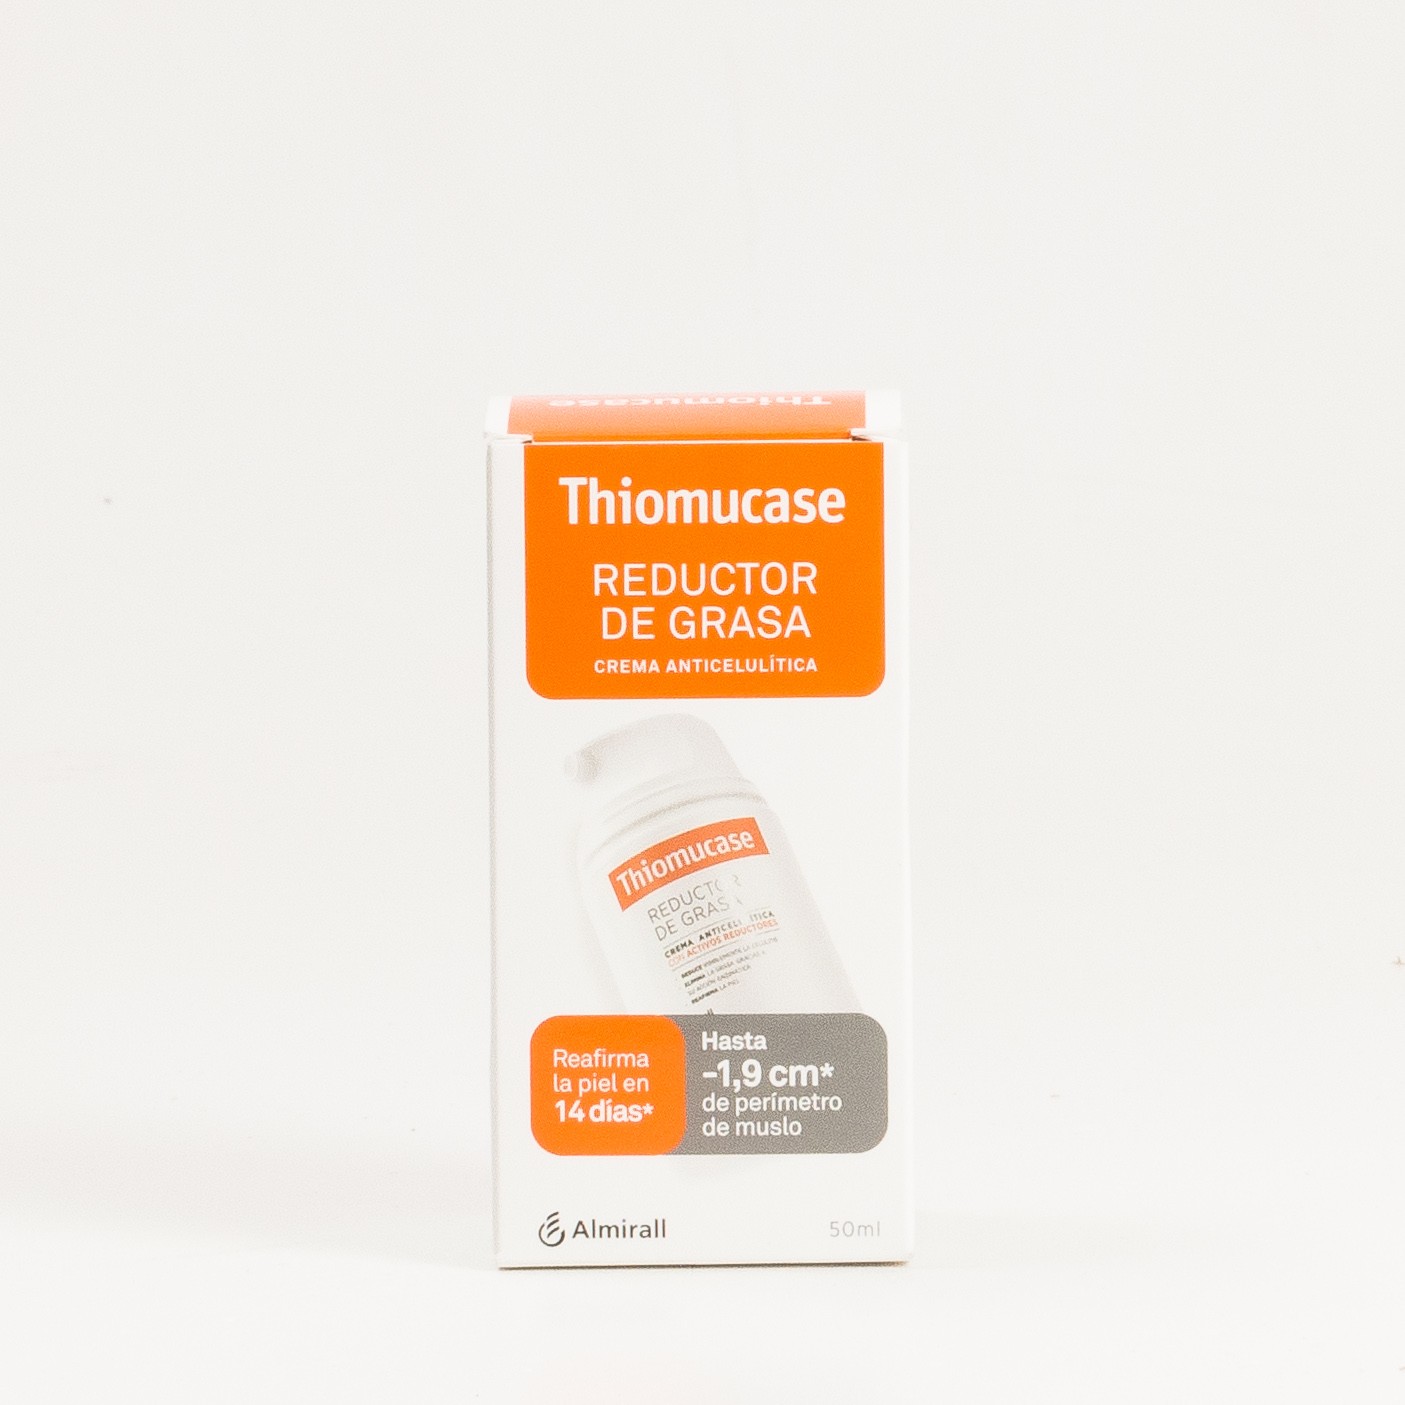 Thiomucase Creme Anticelulite Redutor de Gordura, 50ml.